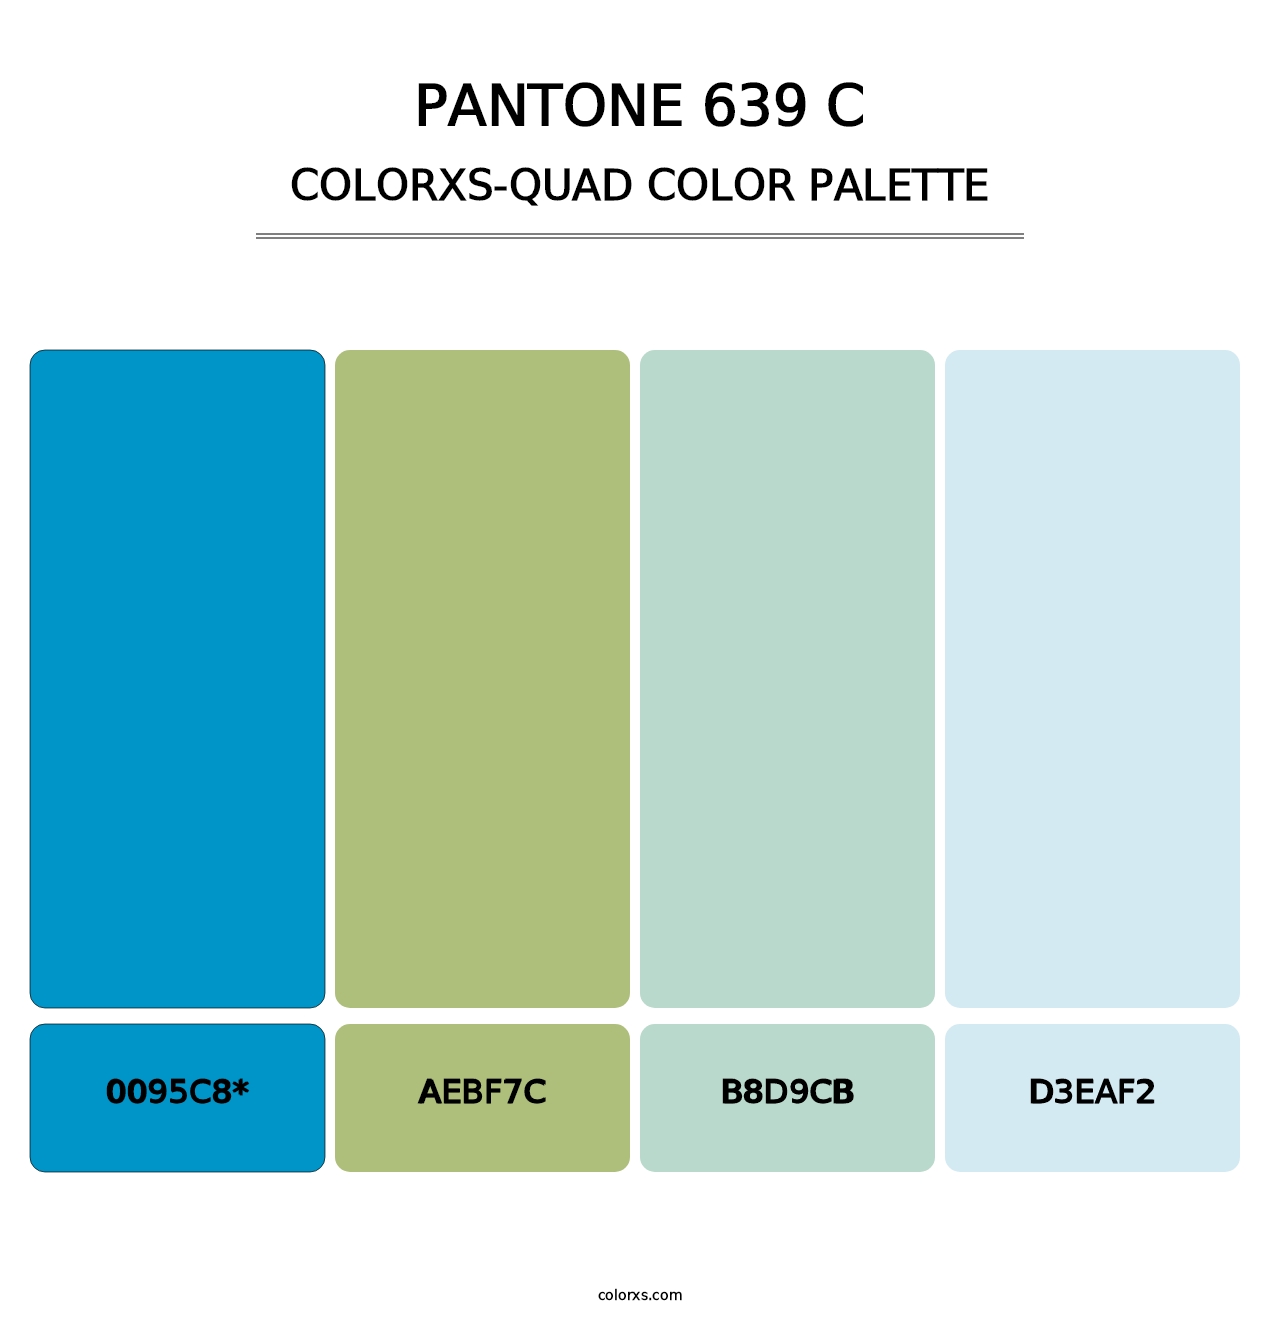 PANTONE 639 C - Colorxs Quad Palette